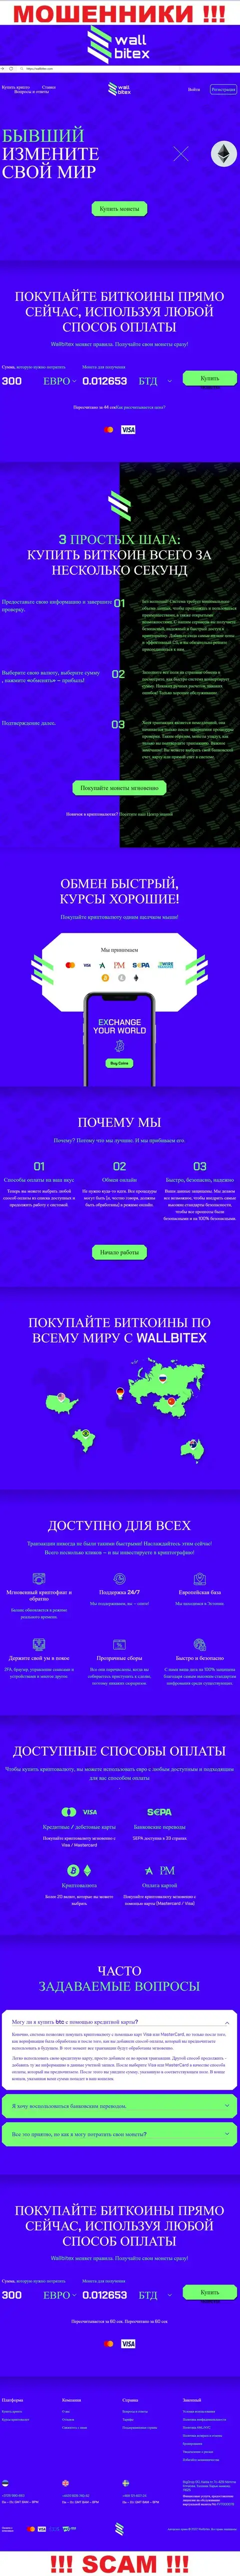 WallBitex Com - это официальный информационный ресурс мошеннической конторы WallBitex